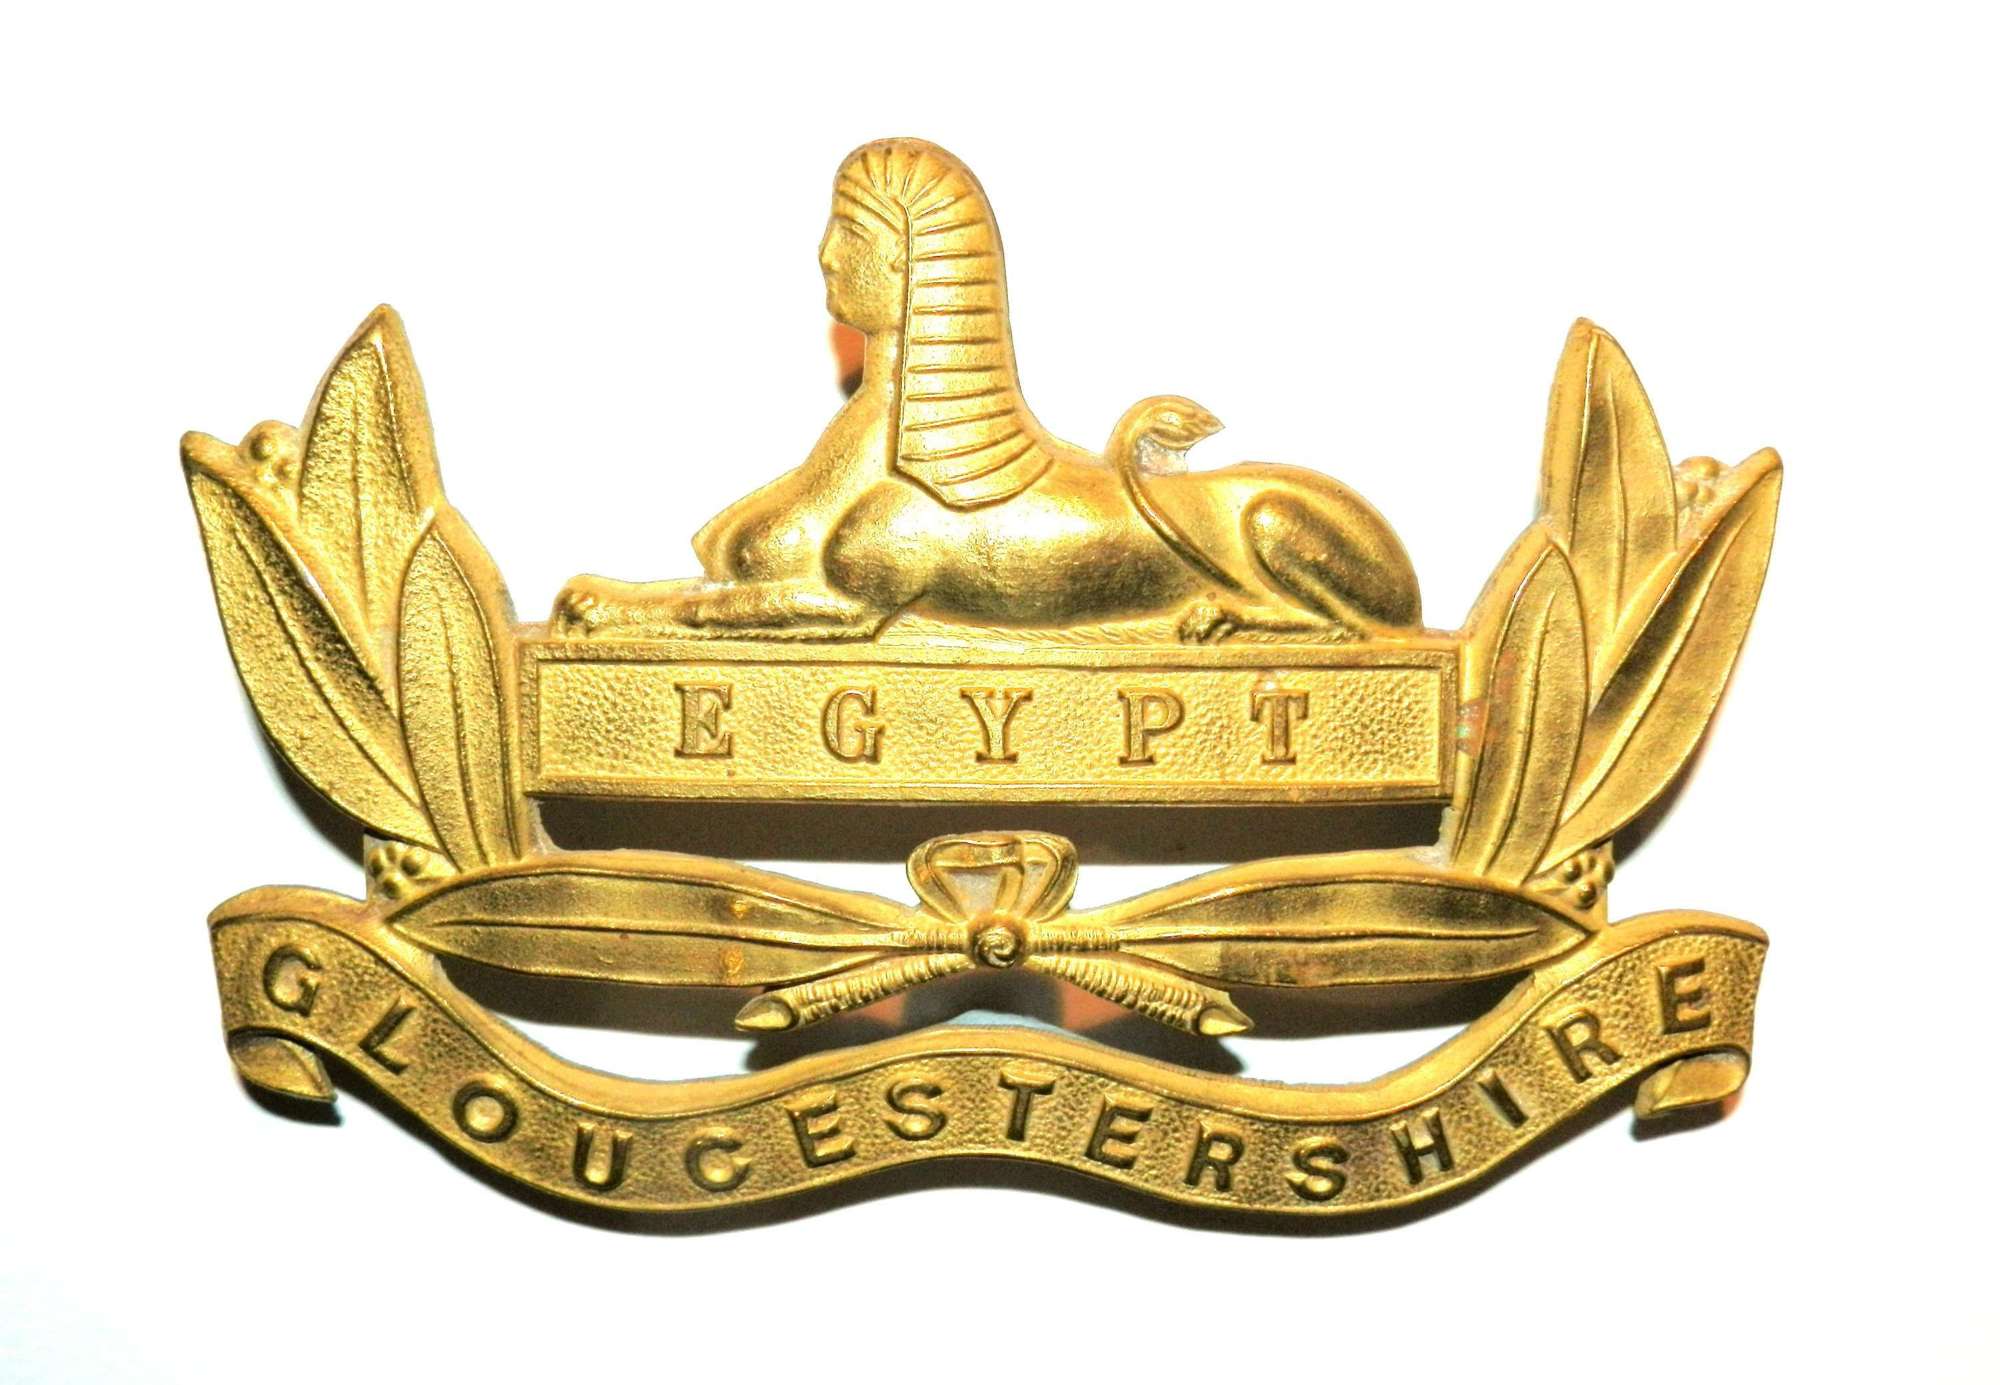 Gloucestershire Regiment Pouch Badge.